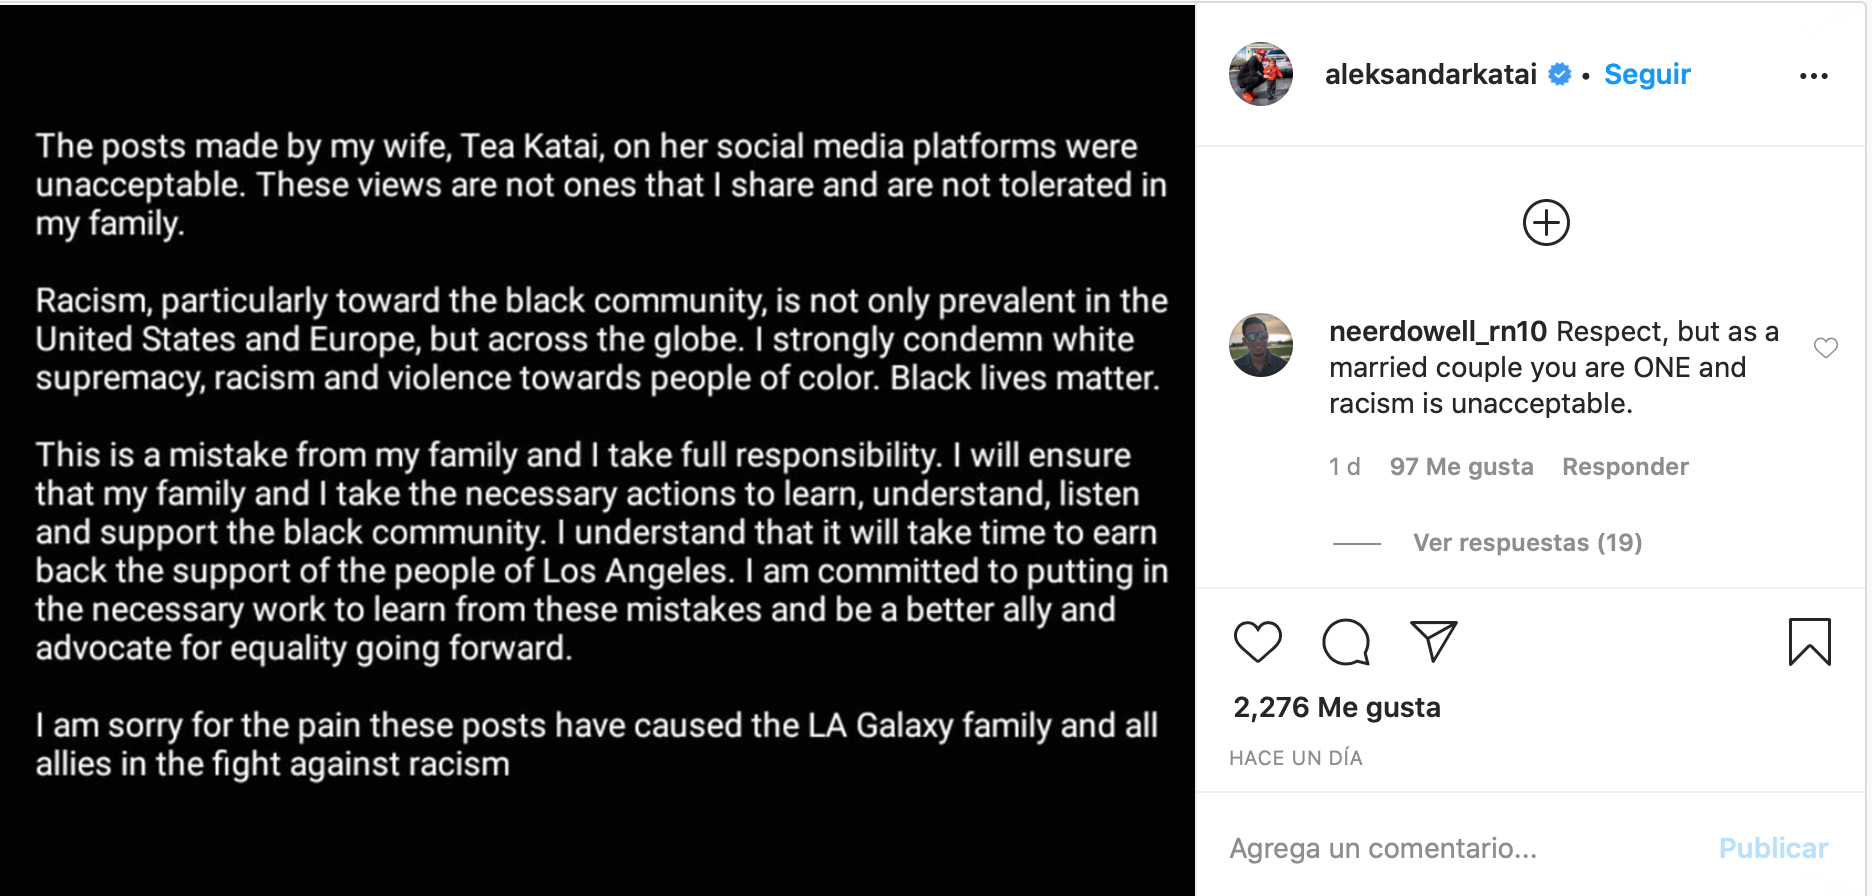 Galaxy despidió a Aleksandar Katai tras comentarios racistas de su esposa